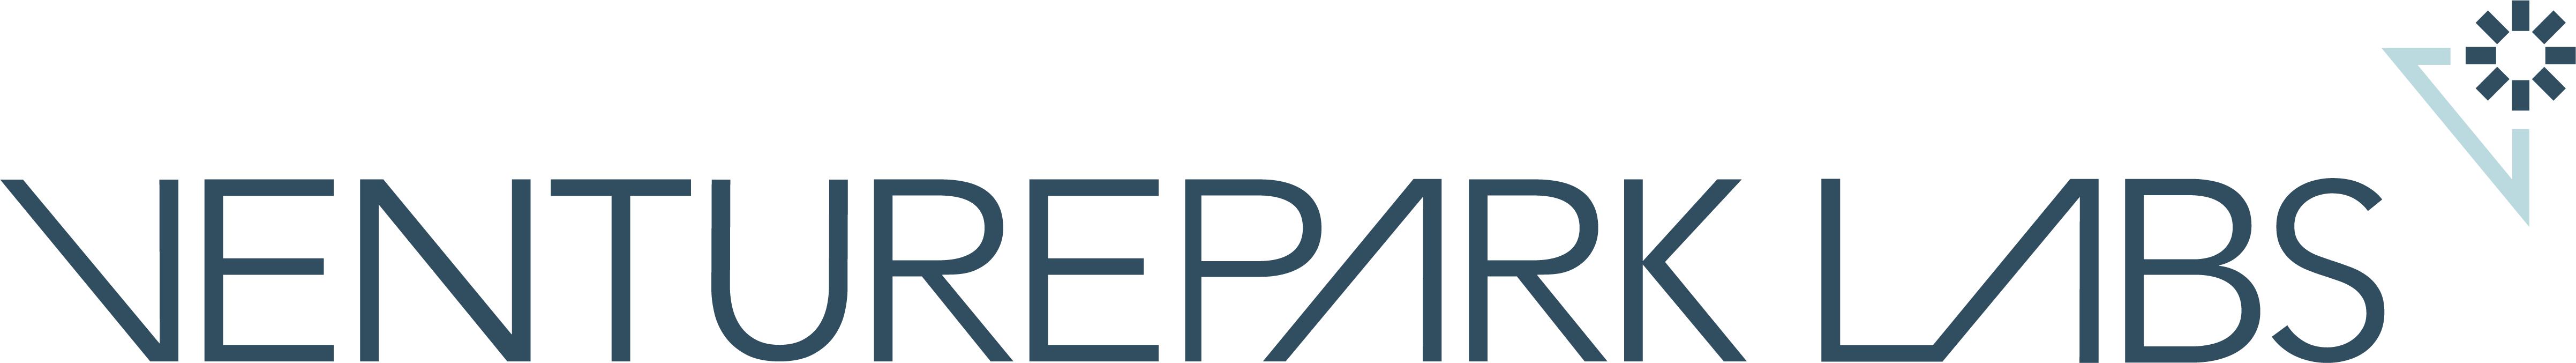 VentureparkLabs-logo